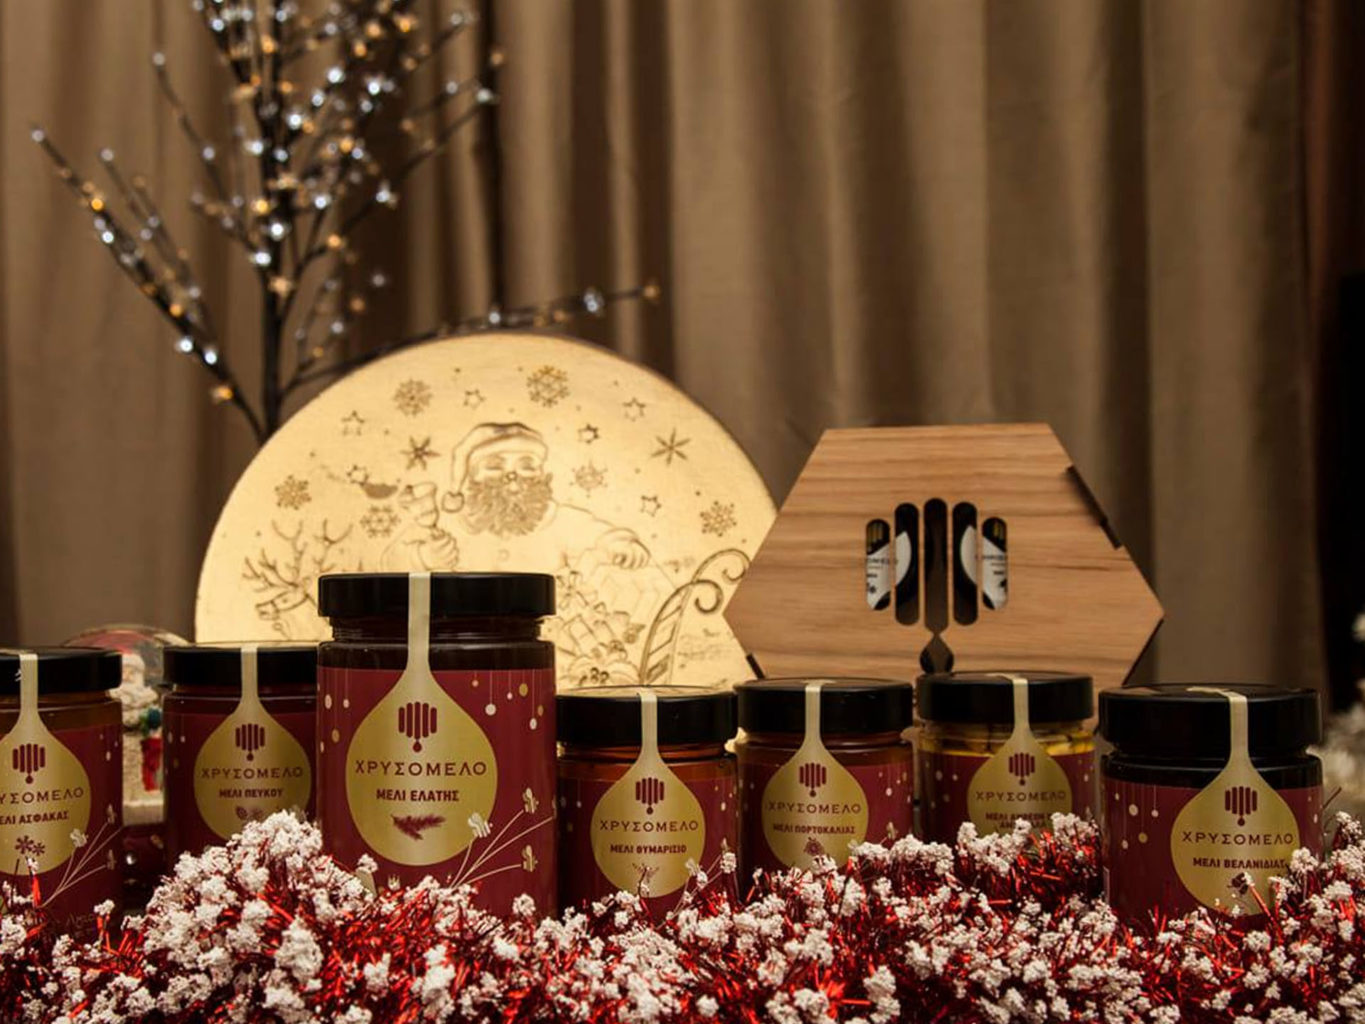 Chrisomelo honey packaging for christmas